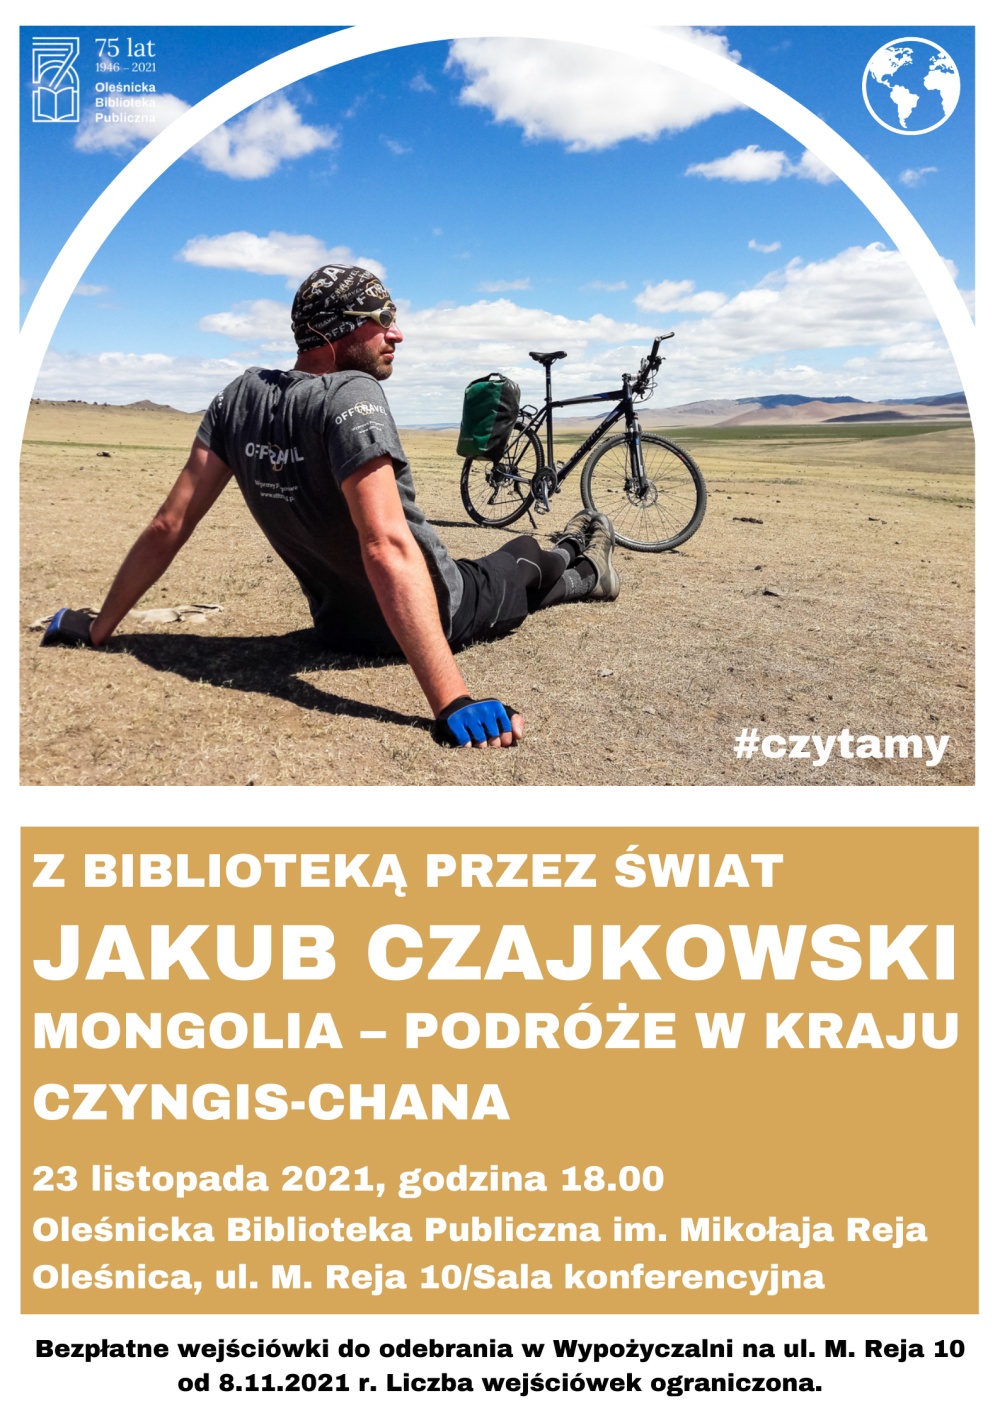 Plakat promujący spotkanie z Jakube Czajkowskim